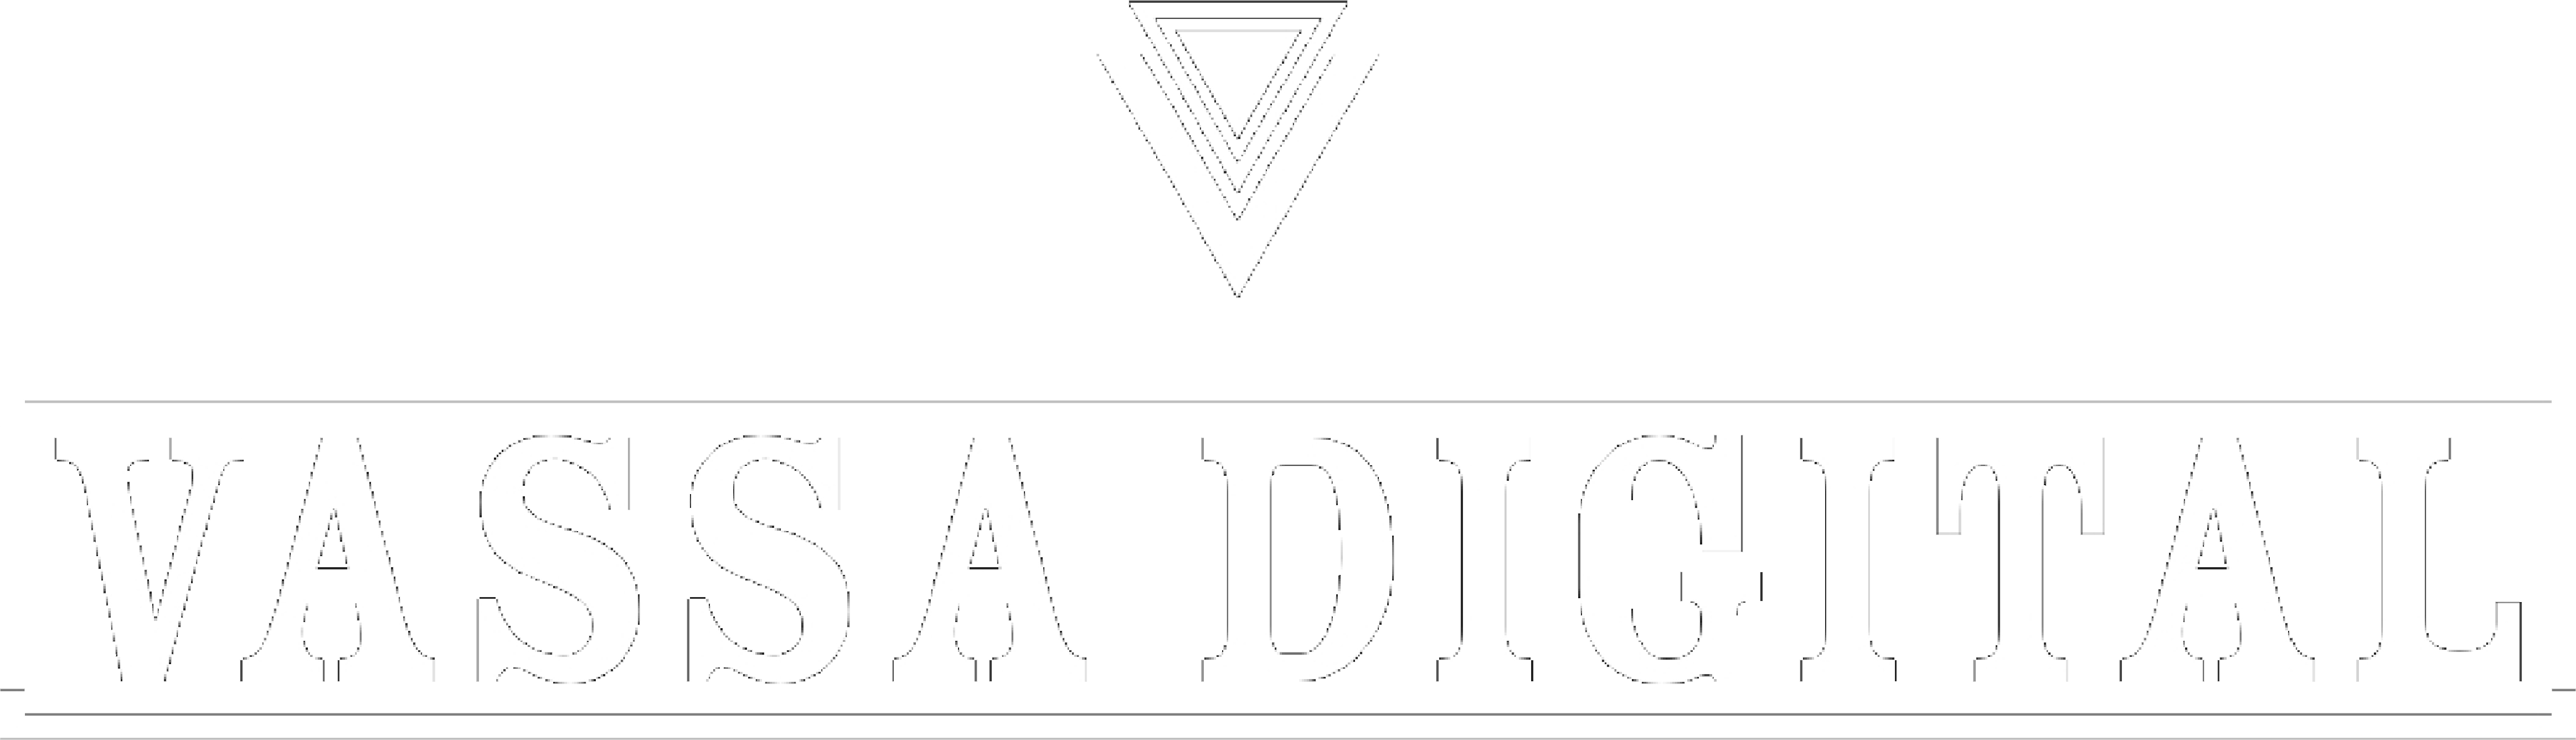 Vassa digital marketing agency logo